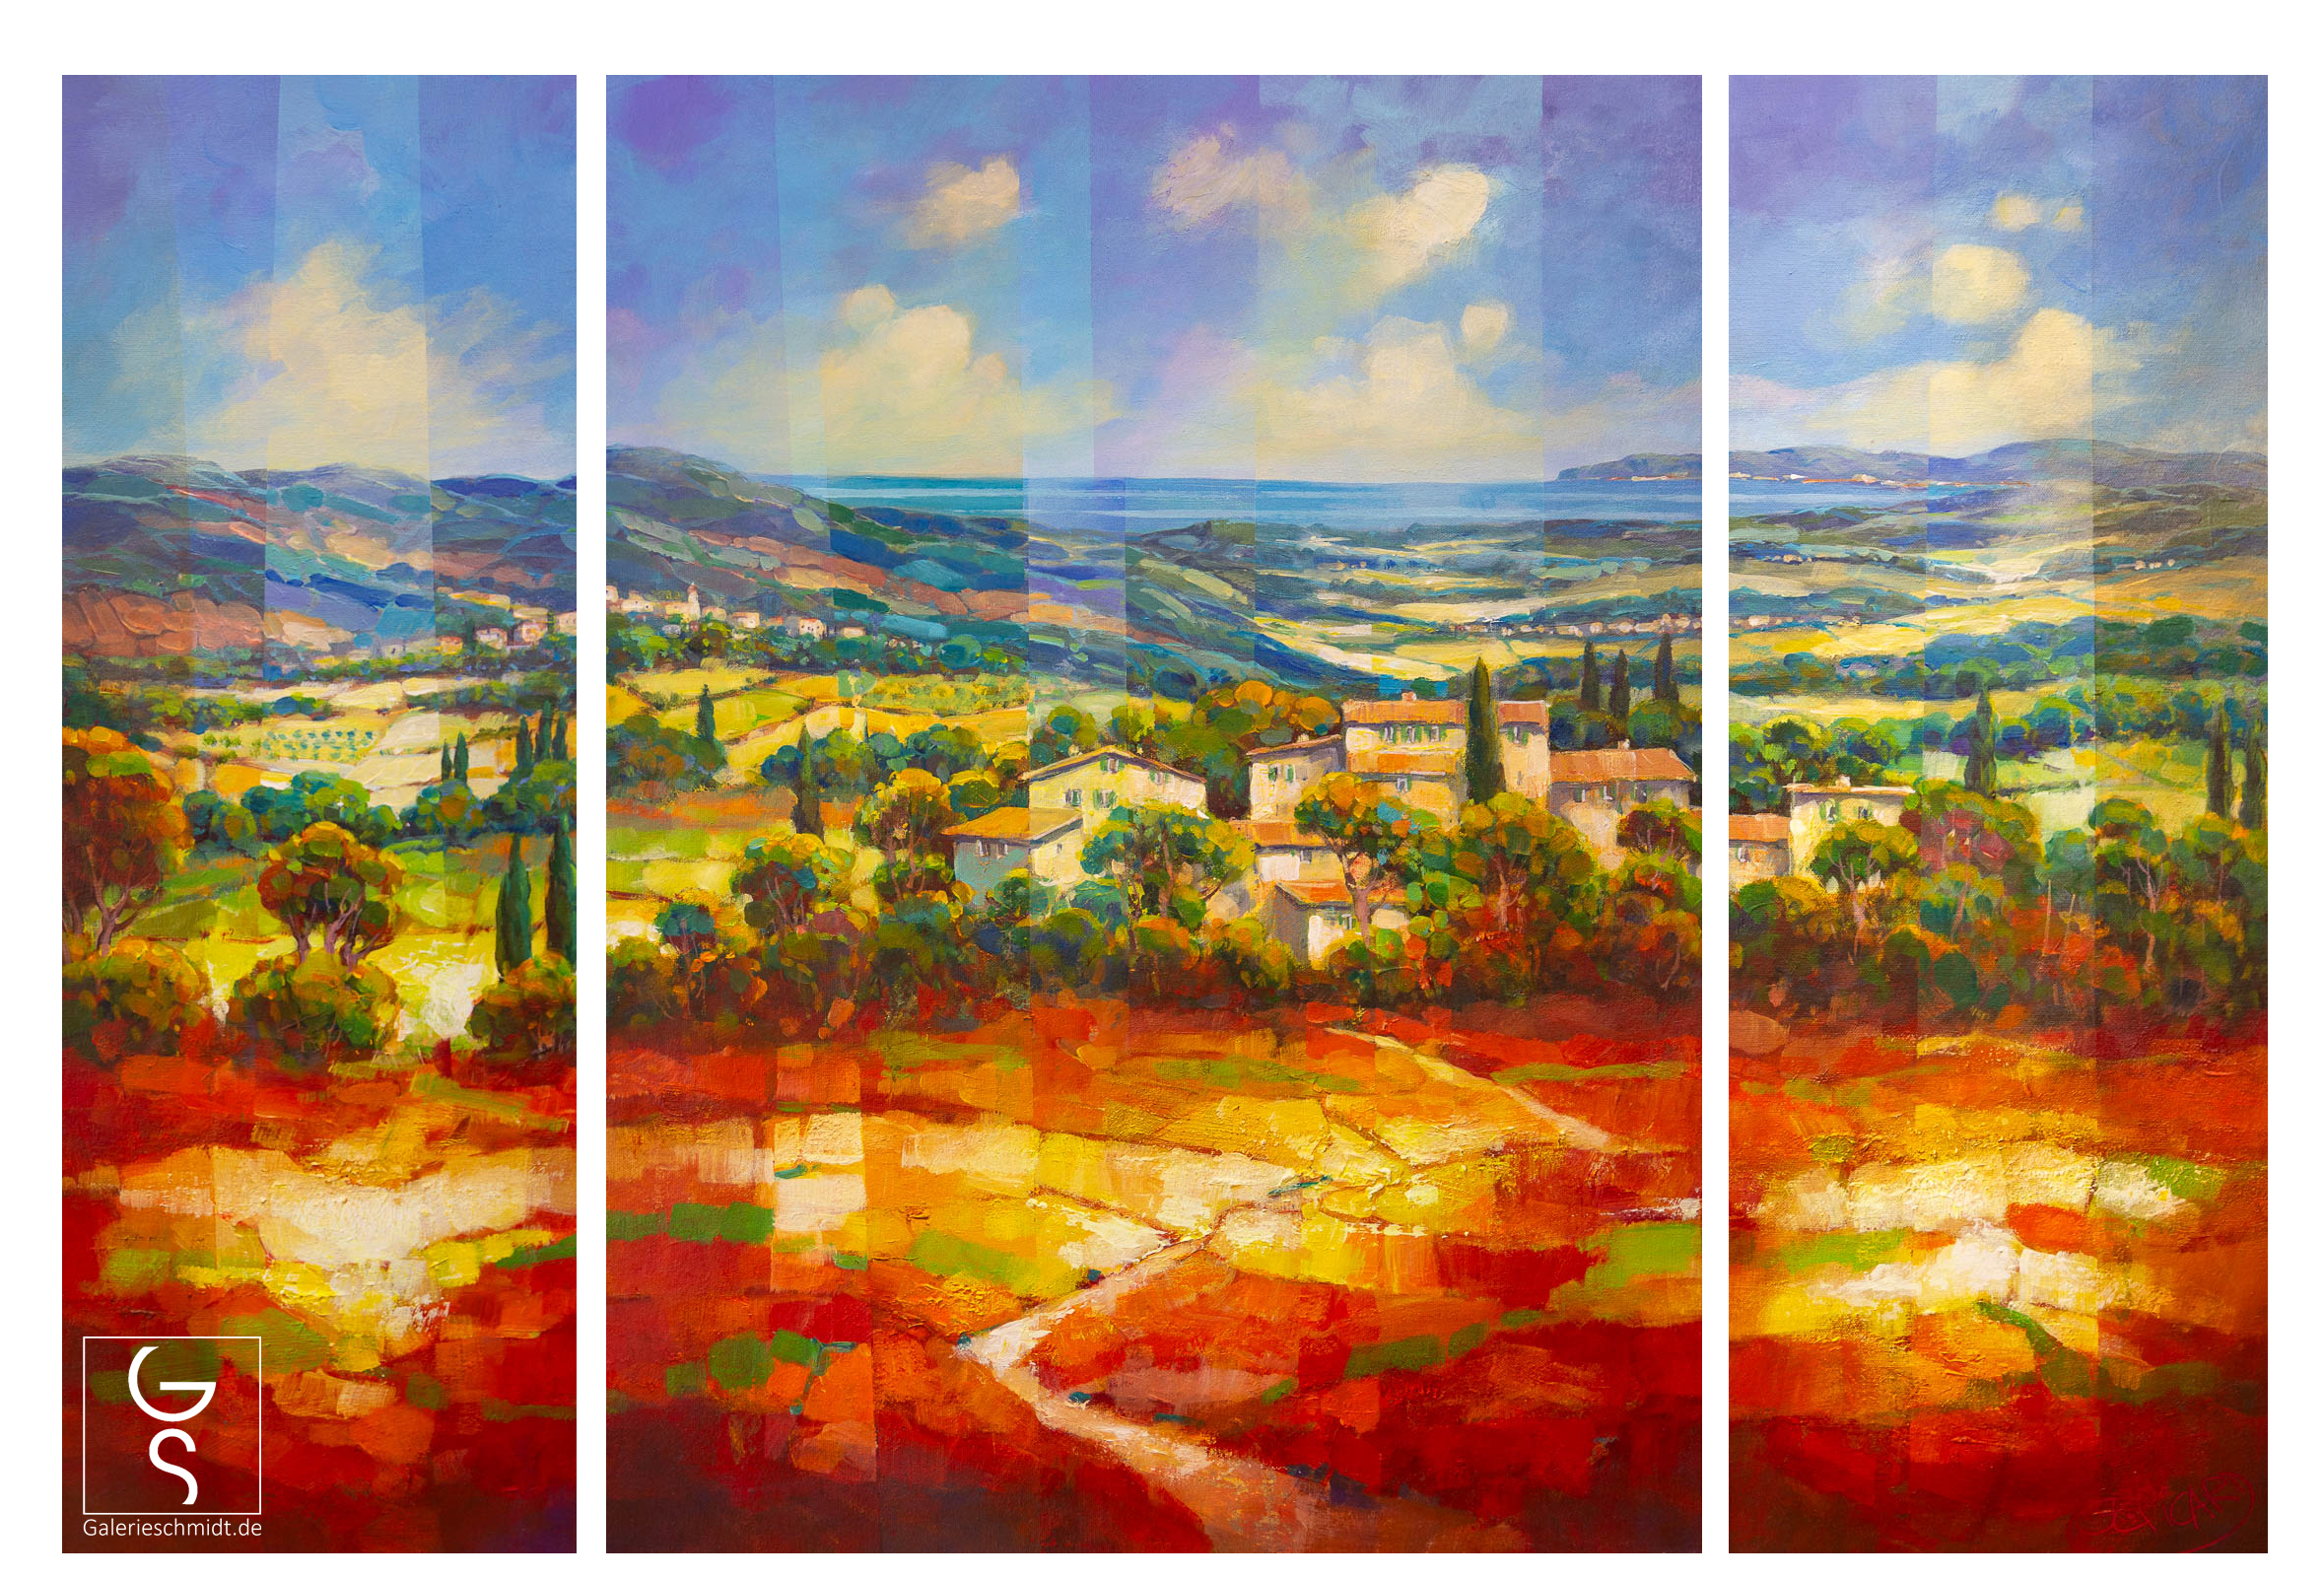 Dorf in leuchtender Landschaft von Jean-Claude Picard, Mediterranes dreiteiliges Gemälde in unserer Kunstgalerie jetzt online kaufen.